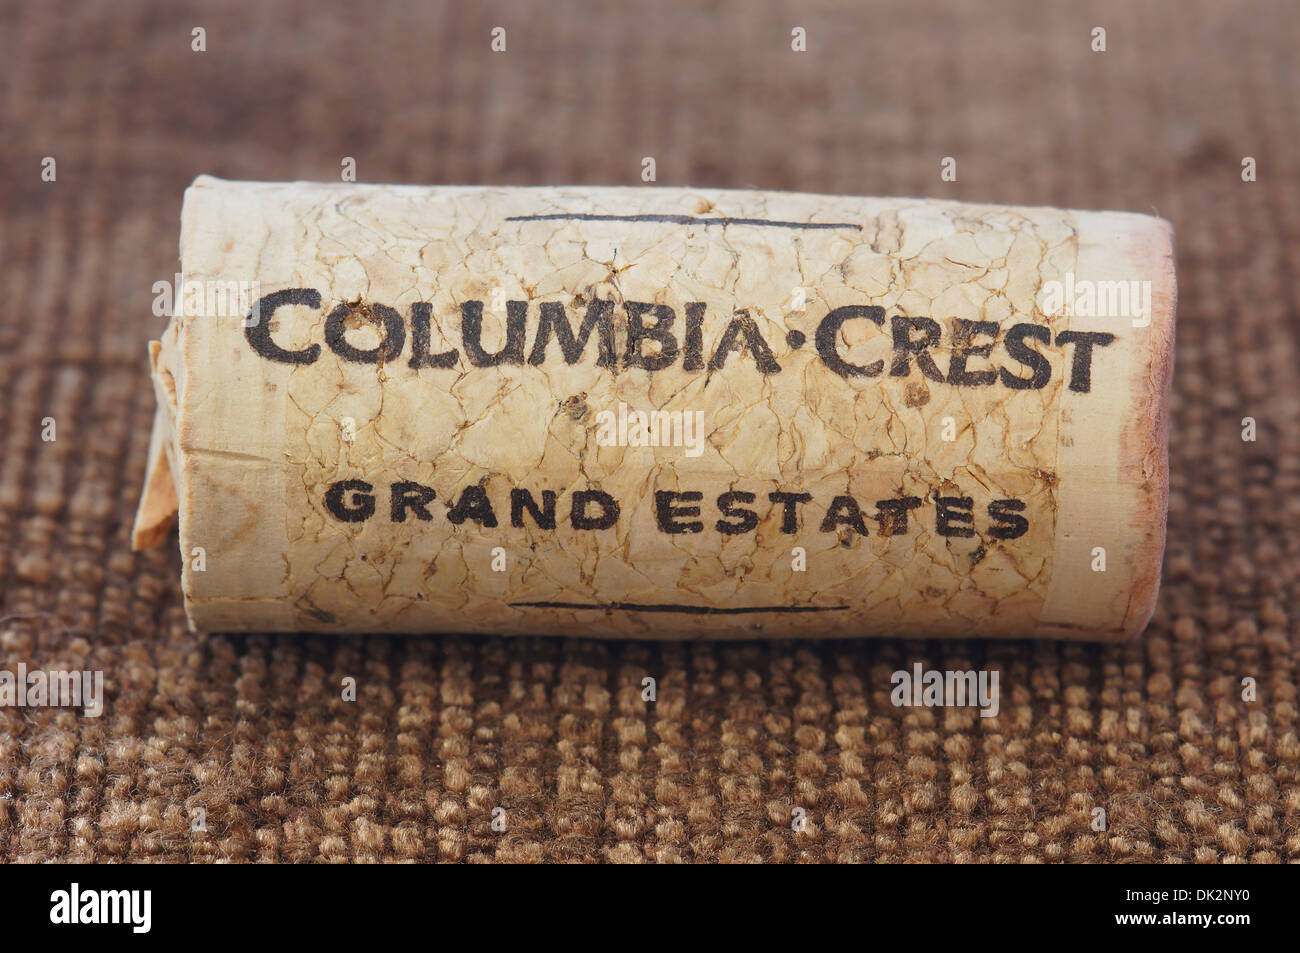 Columbia Crest Grand Estates wine cork stopper Stock Photo